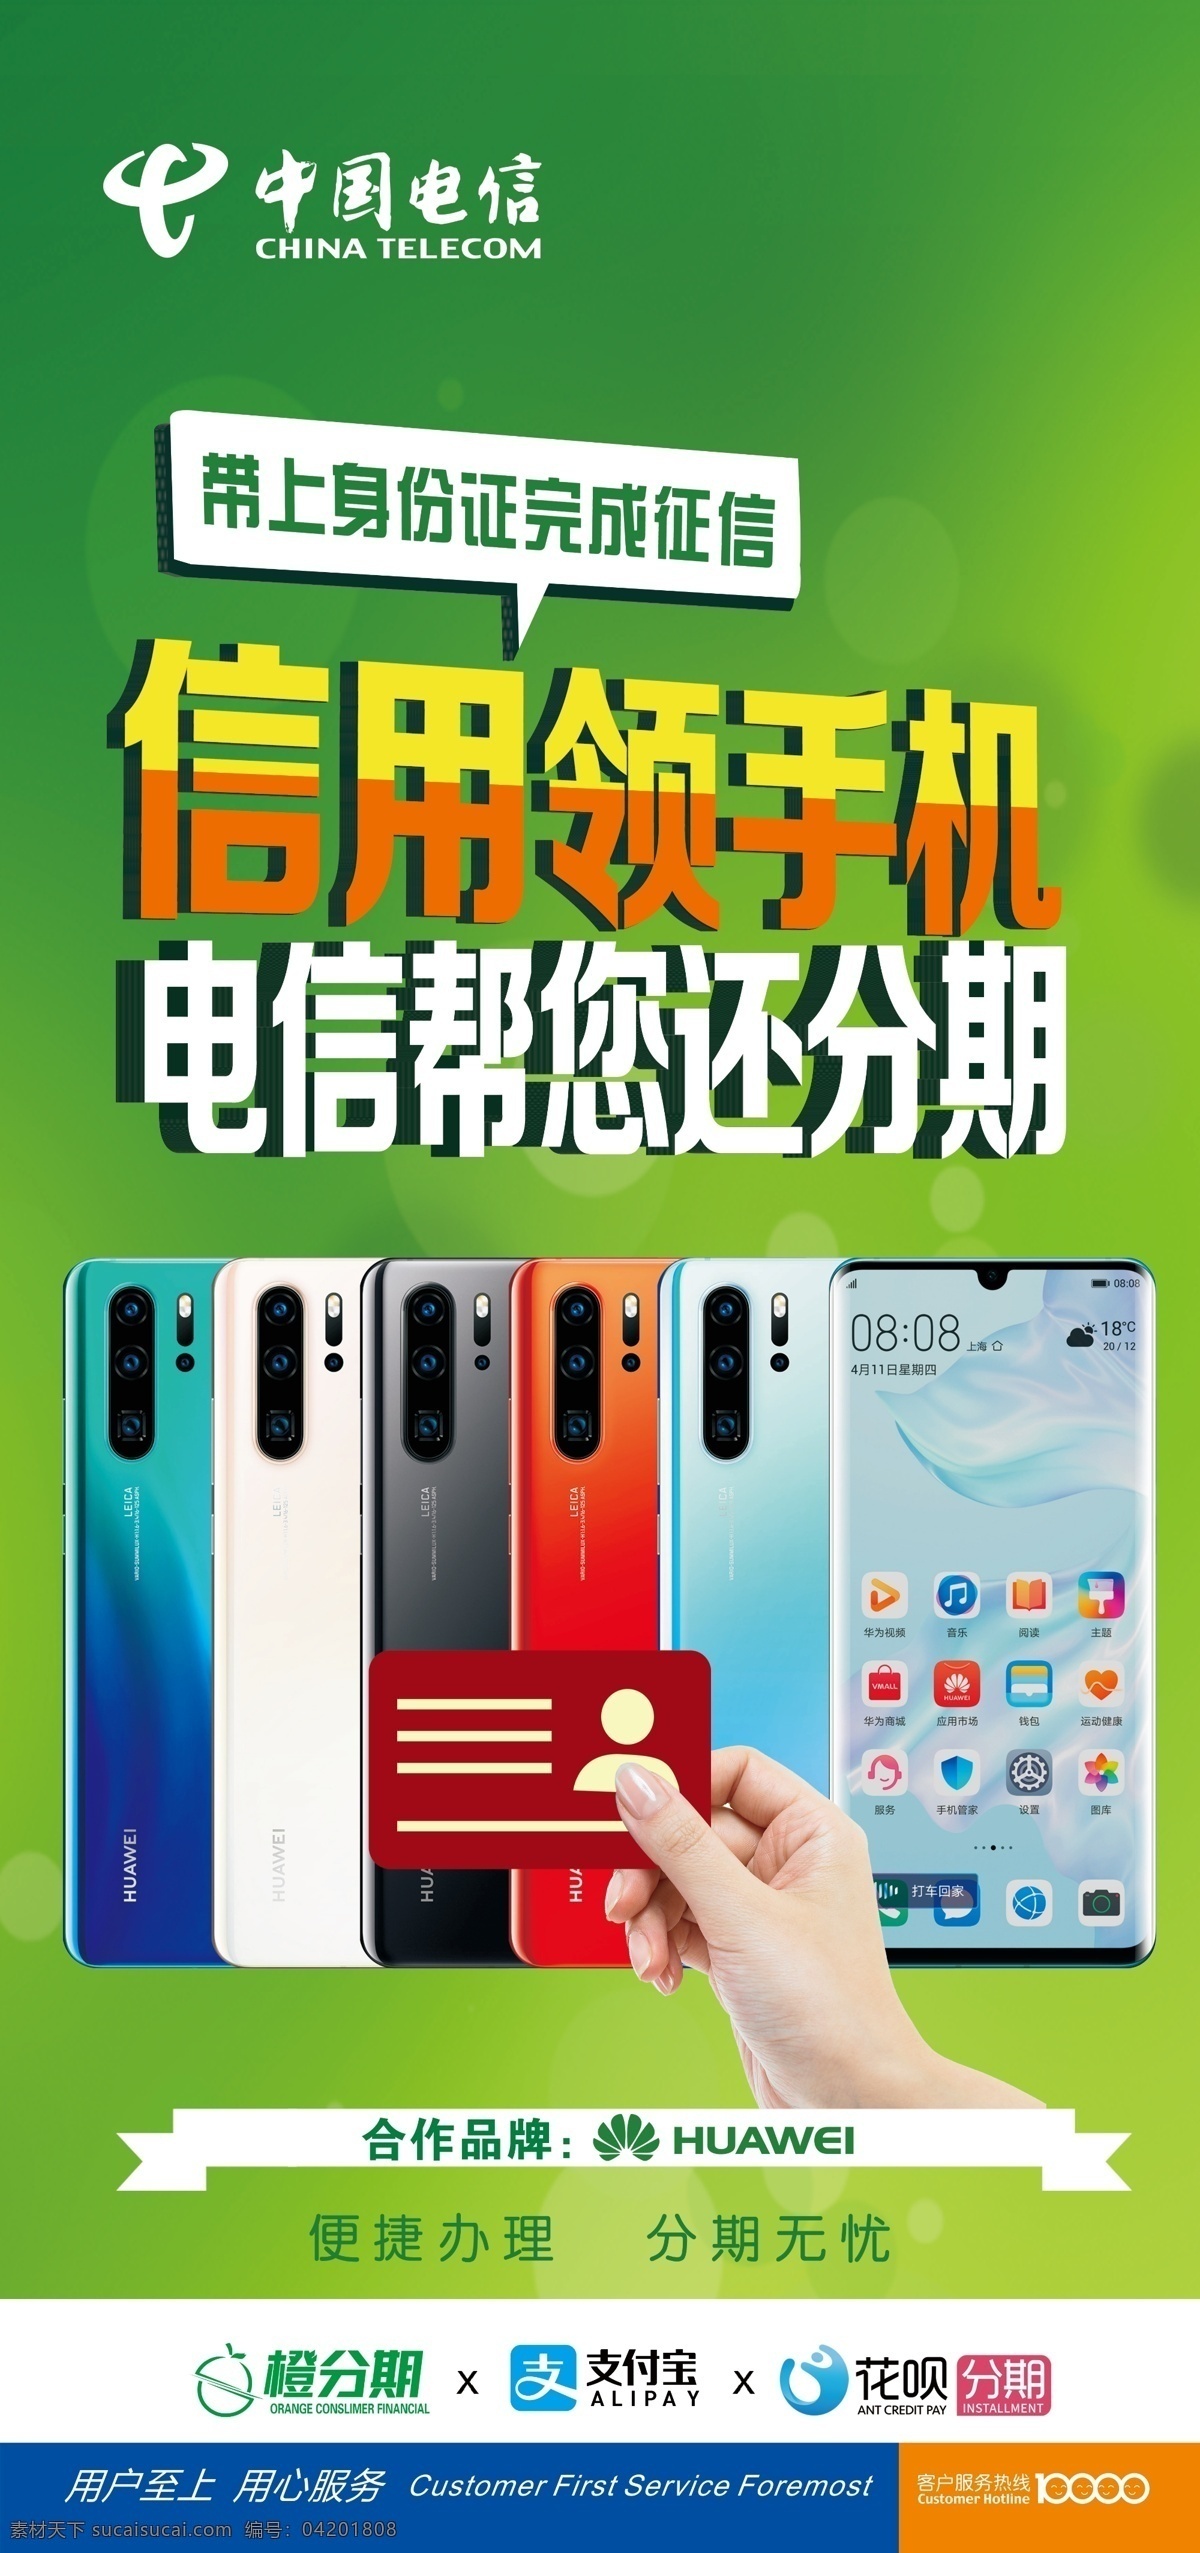 中国电信 免费 领 手机 中国电信展架 免费领手机 电信 绿色背景 电信海报